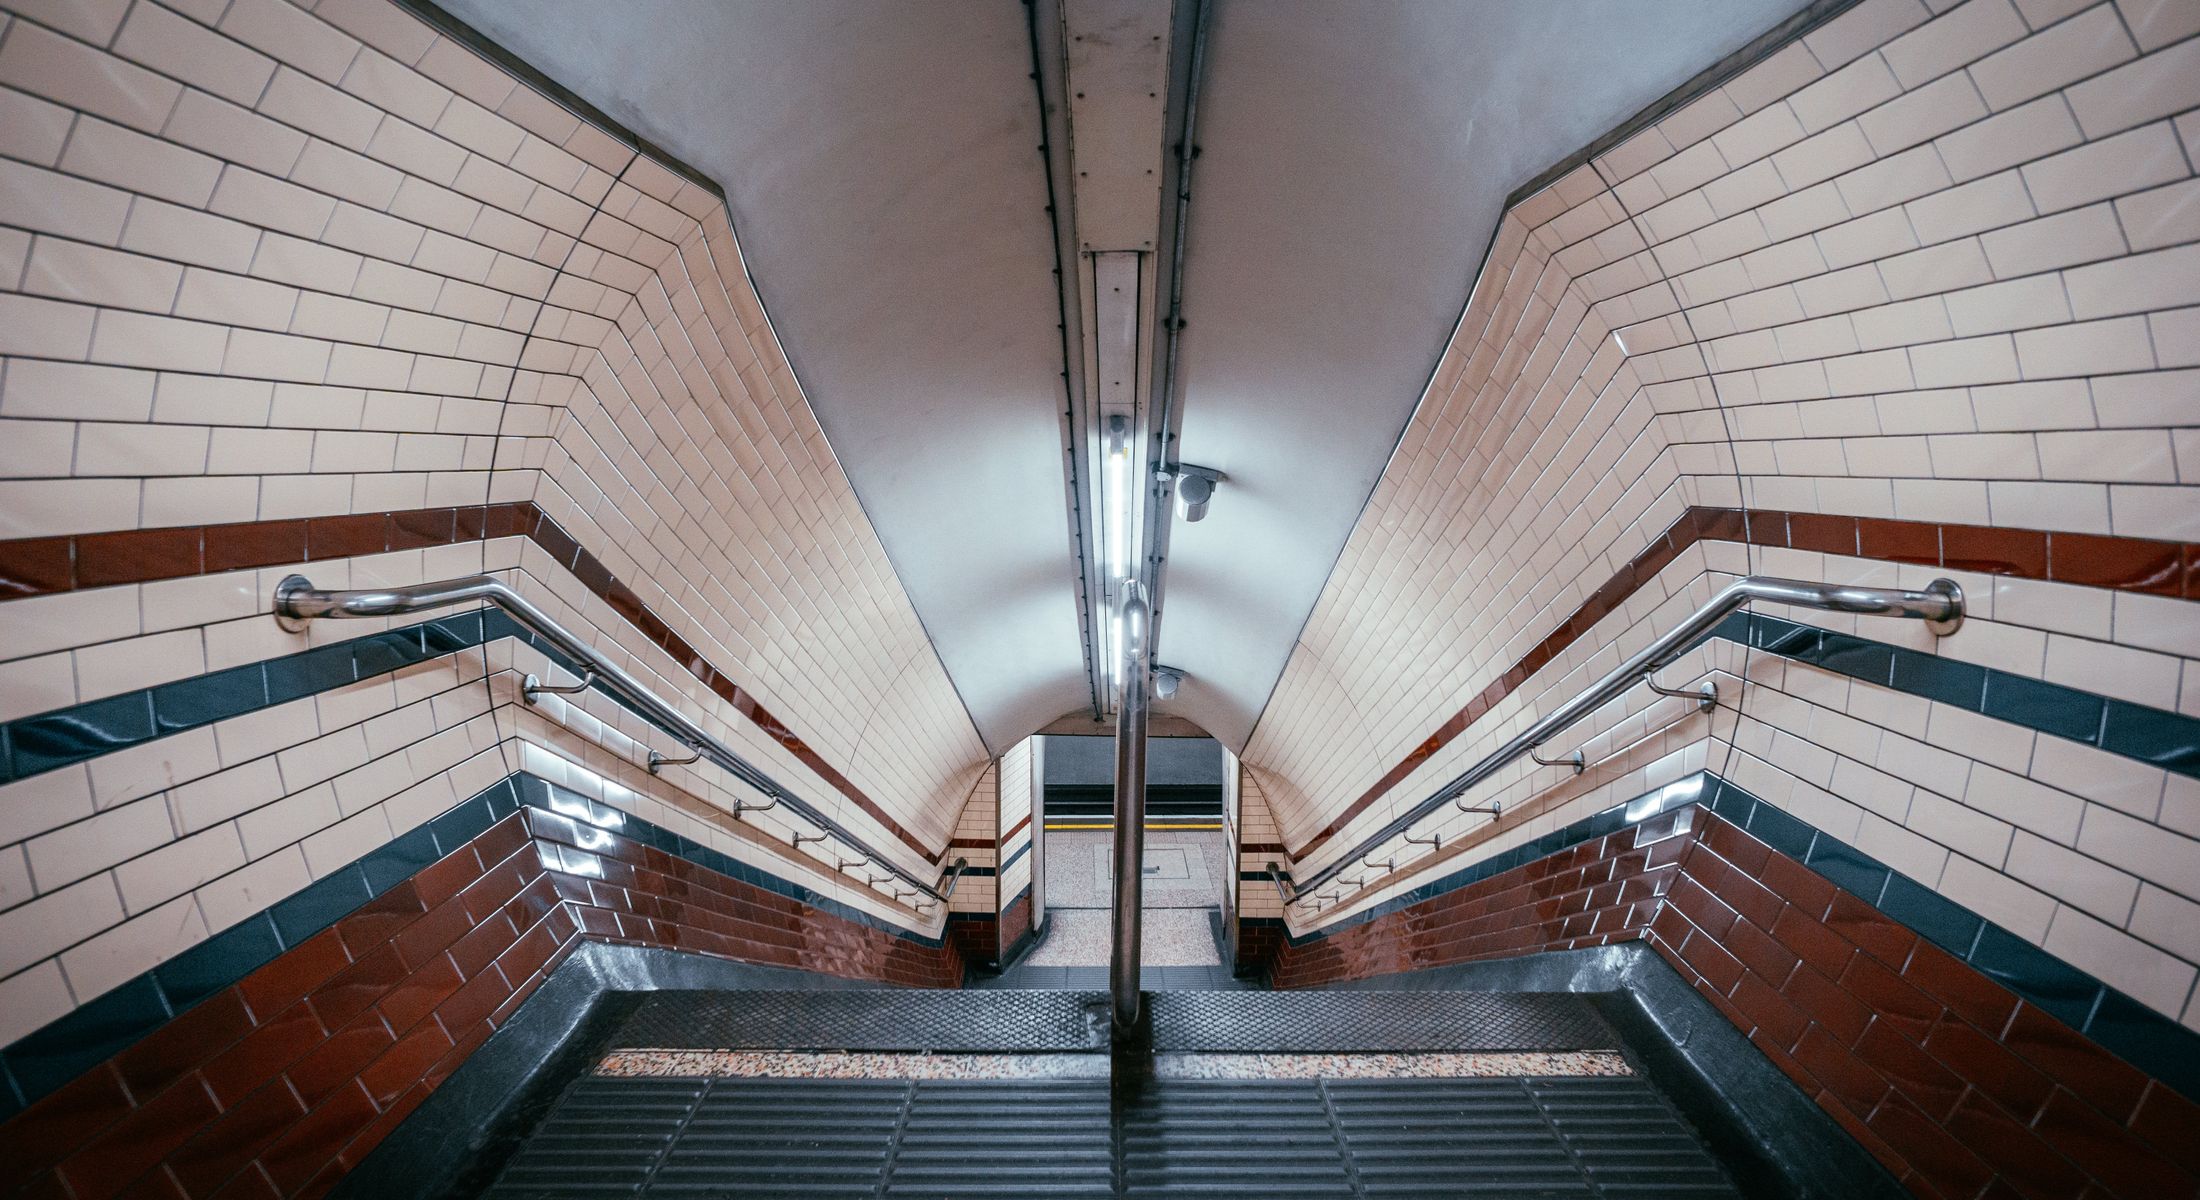 Underground station in London